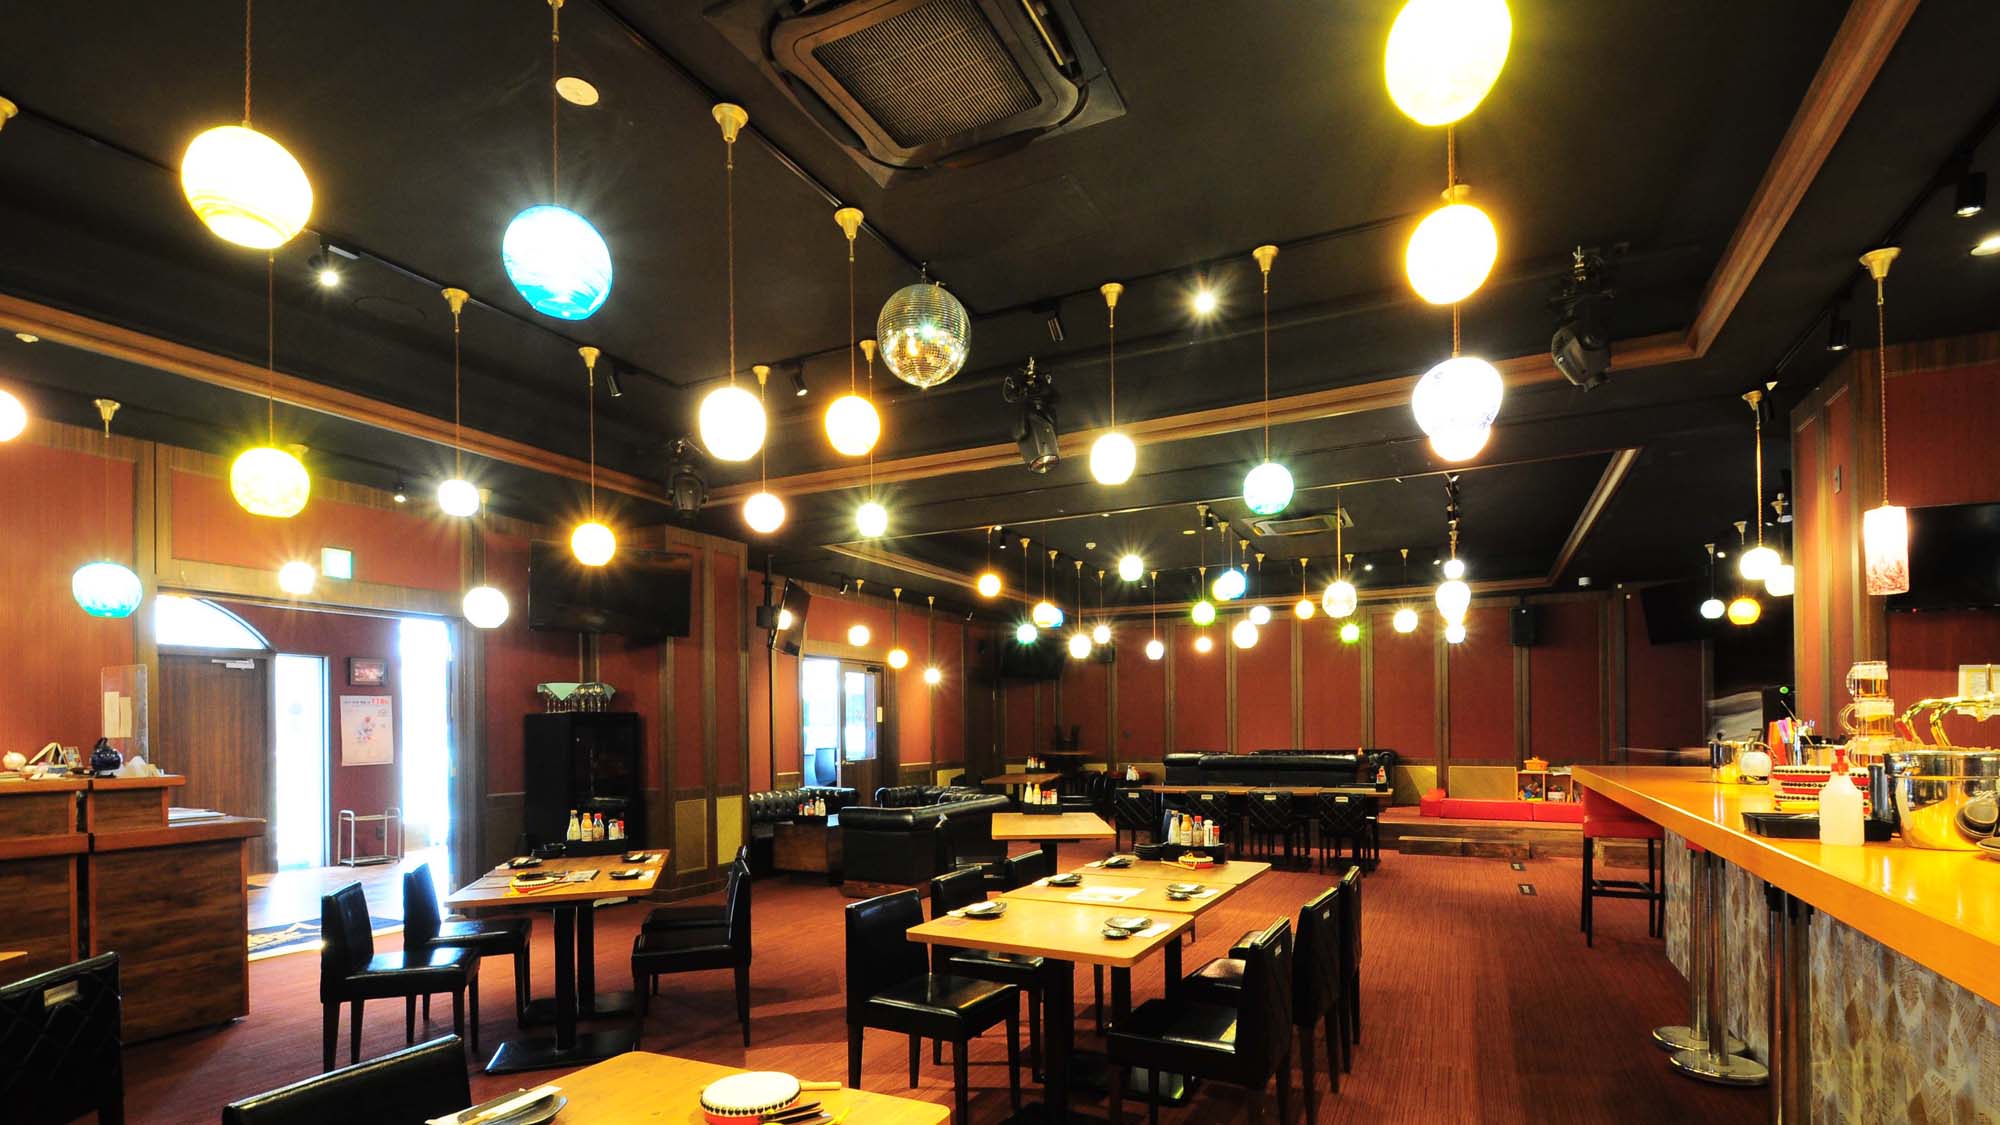 【2F飲食店】琉球ガラスのランプの下で、宮古島産の食材と酒をお楽しみいただけます